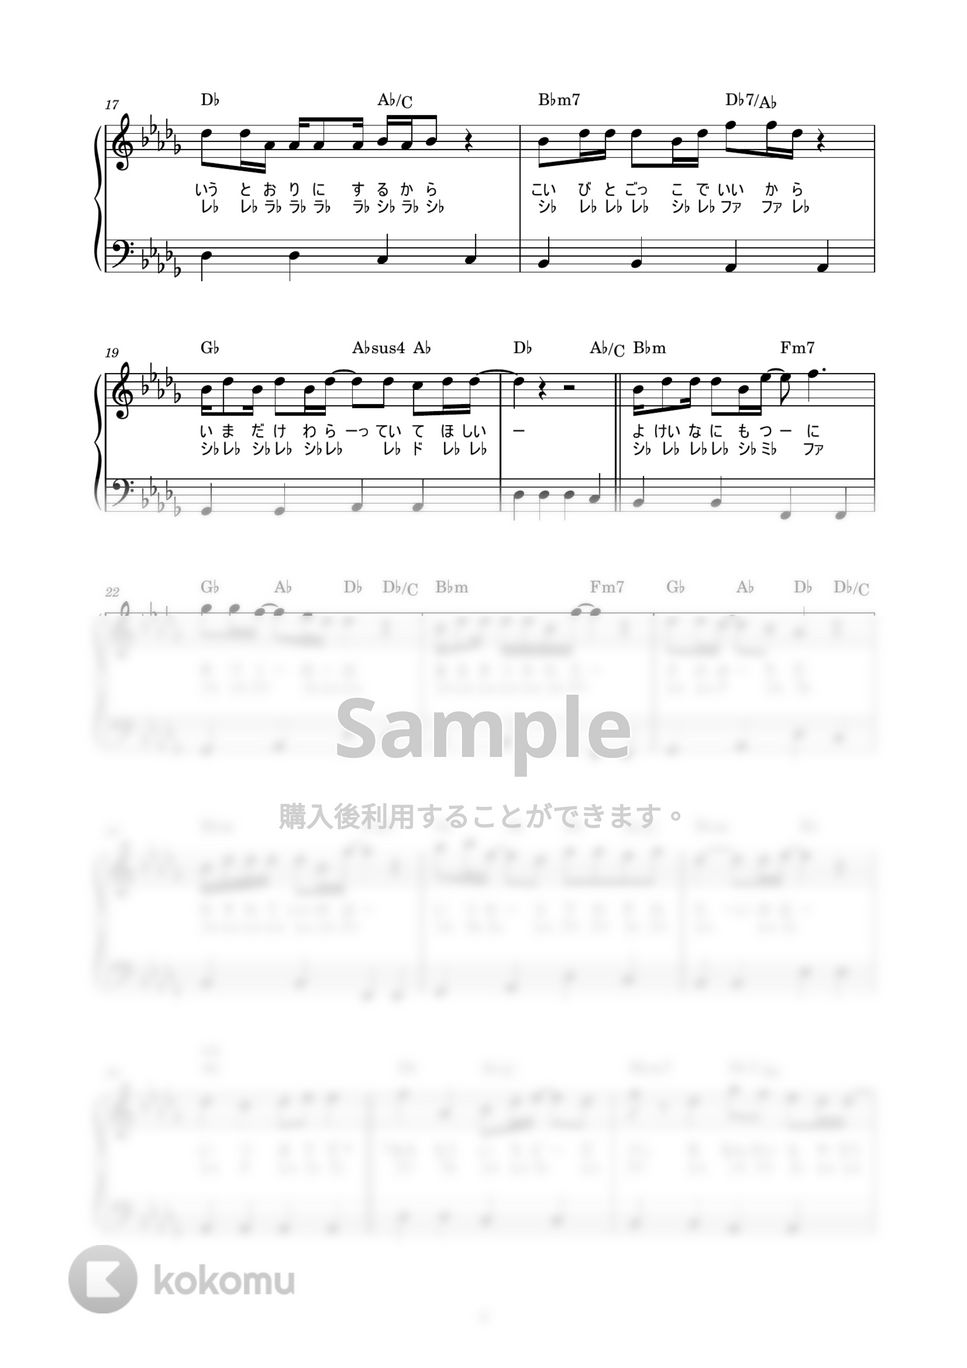 マカロニえんぴつ - 恋人ごっこ (かんたん / 歌詞付き / ドレミ付き / 初心者) by piano.tokyo